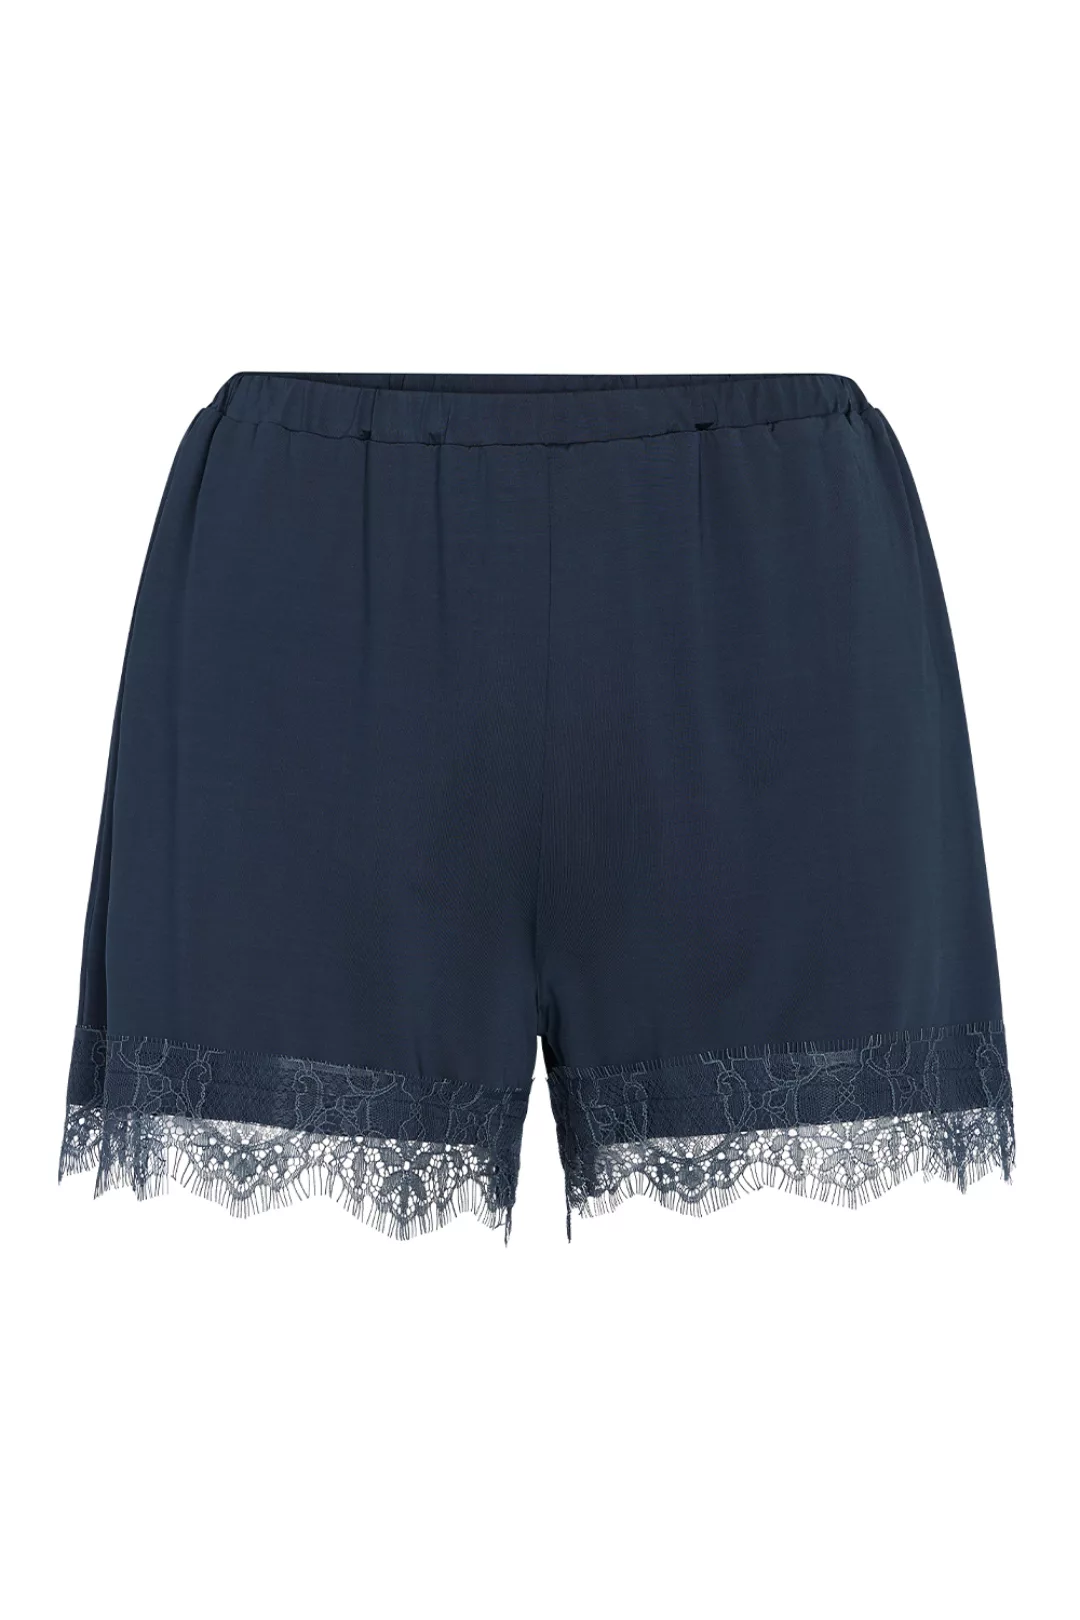 ESSENZA Natalie Uni Shorts Loungewear 4 42 blau günstig online kaufen